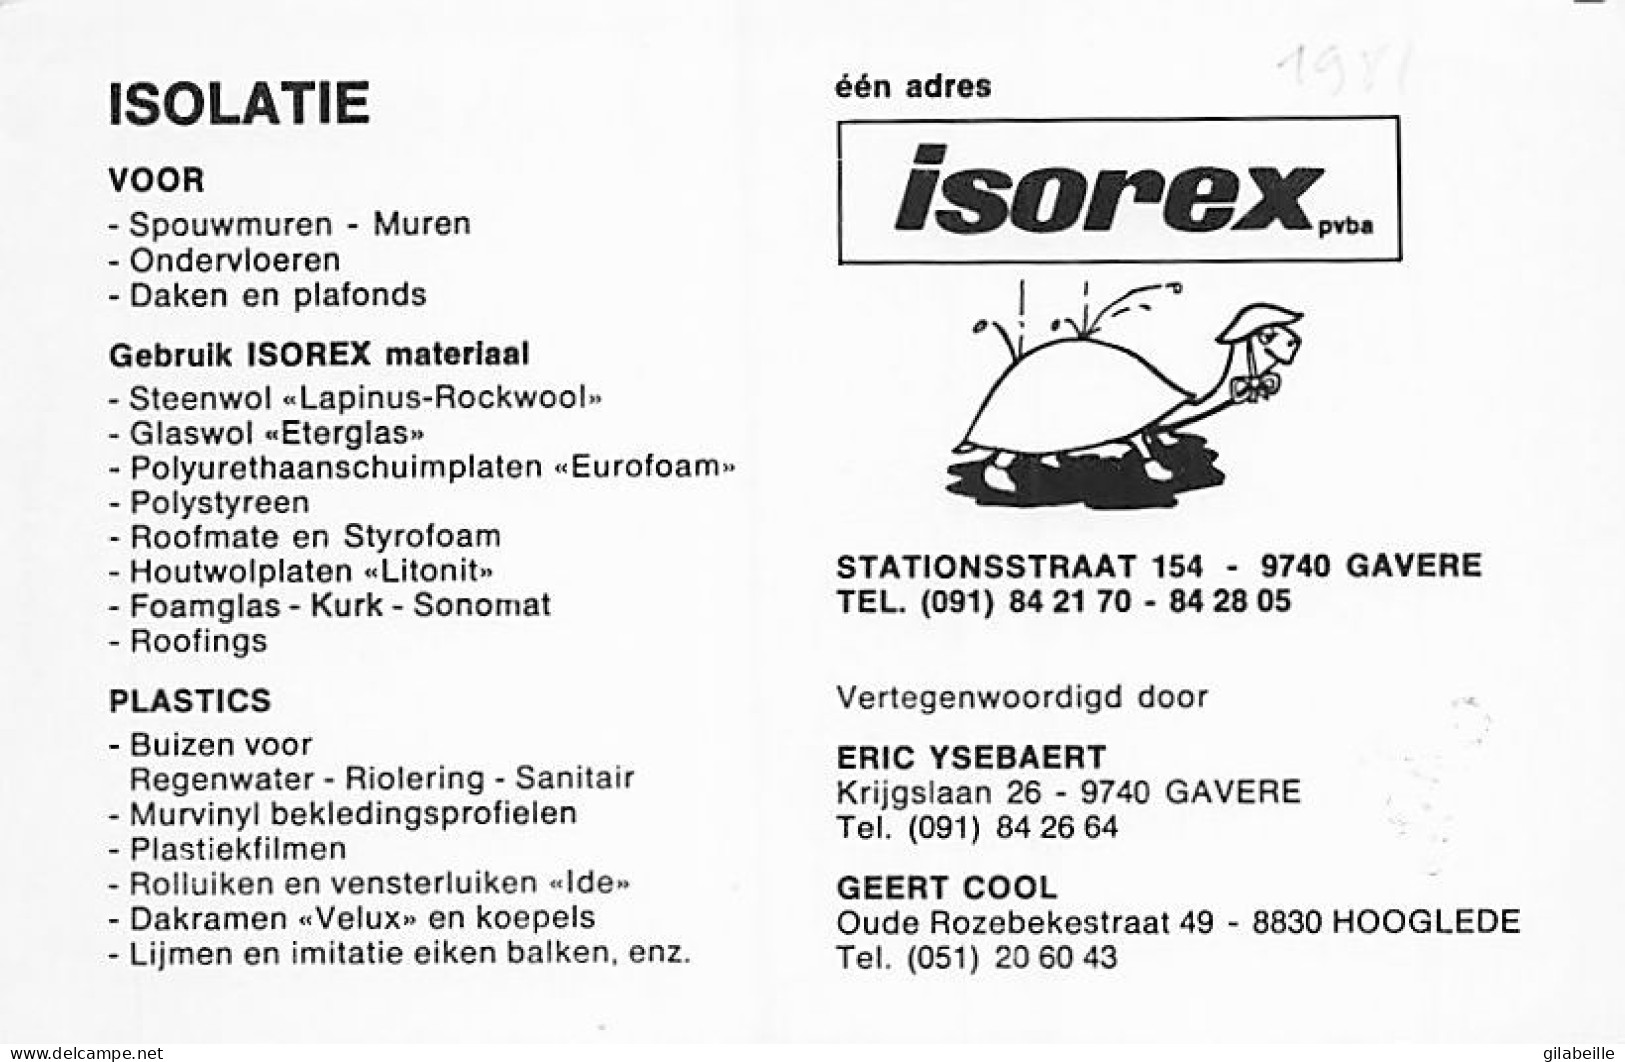 Velo - Cyclisme - Coureur Cycliste Belge Philippe Dethier - Team Isorex - 1981 - Autographe - Non Classés